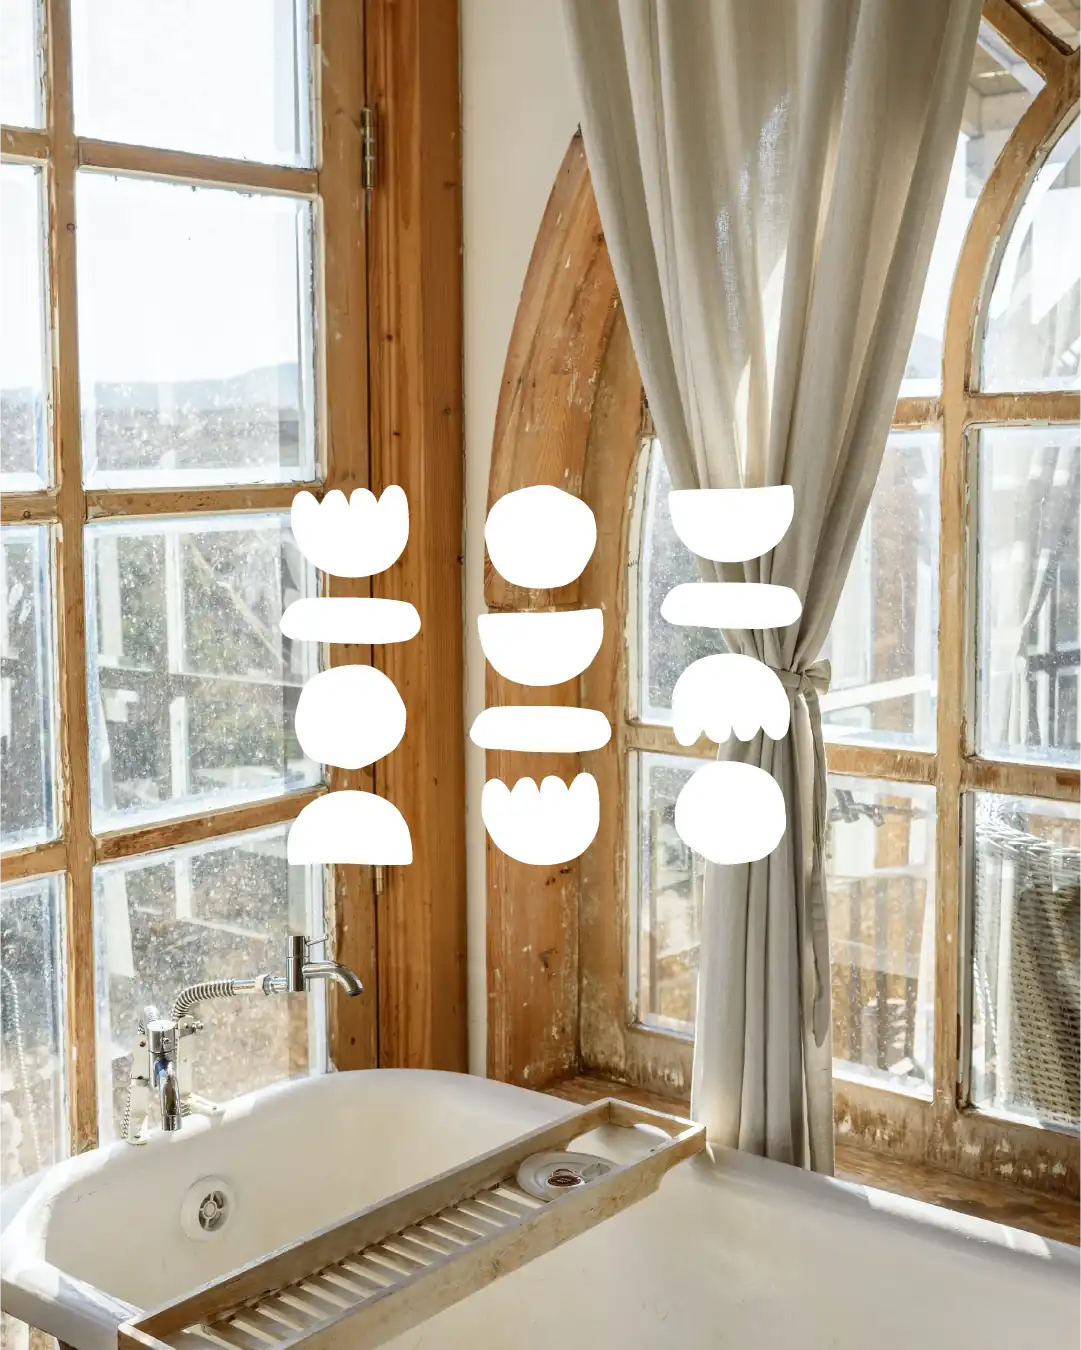 Logotype de l'identité visuelle de Marina Trillot, par le Studio La Juria, en blanc sur un fond photo d'un intérieur de salle de bain, avec une baignoire en bas entourée de grandes fenêtres à carreaux entourés de cadres de bois clair.